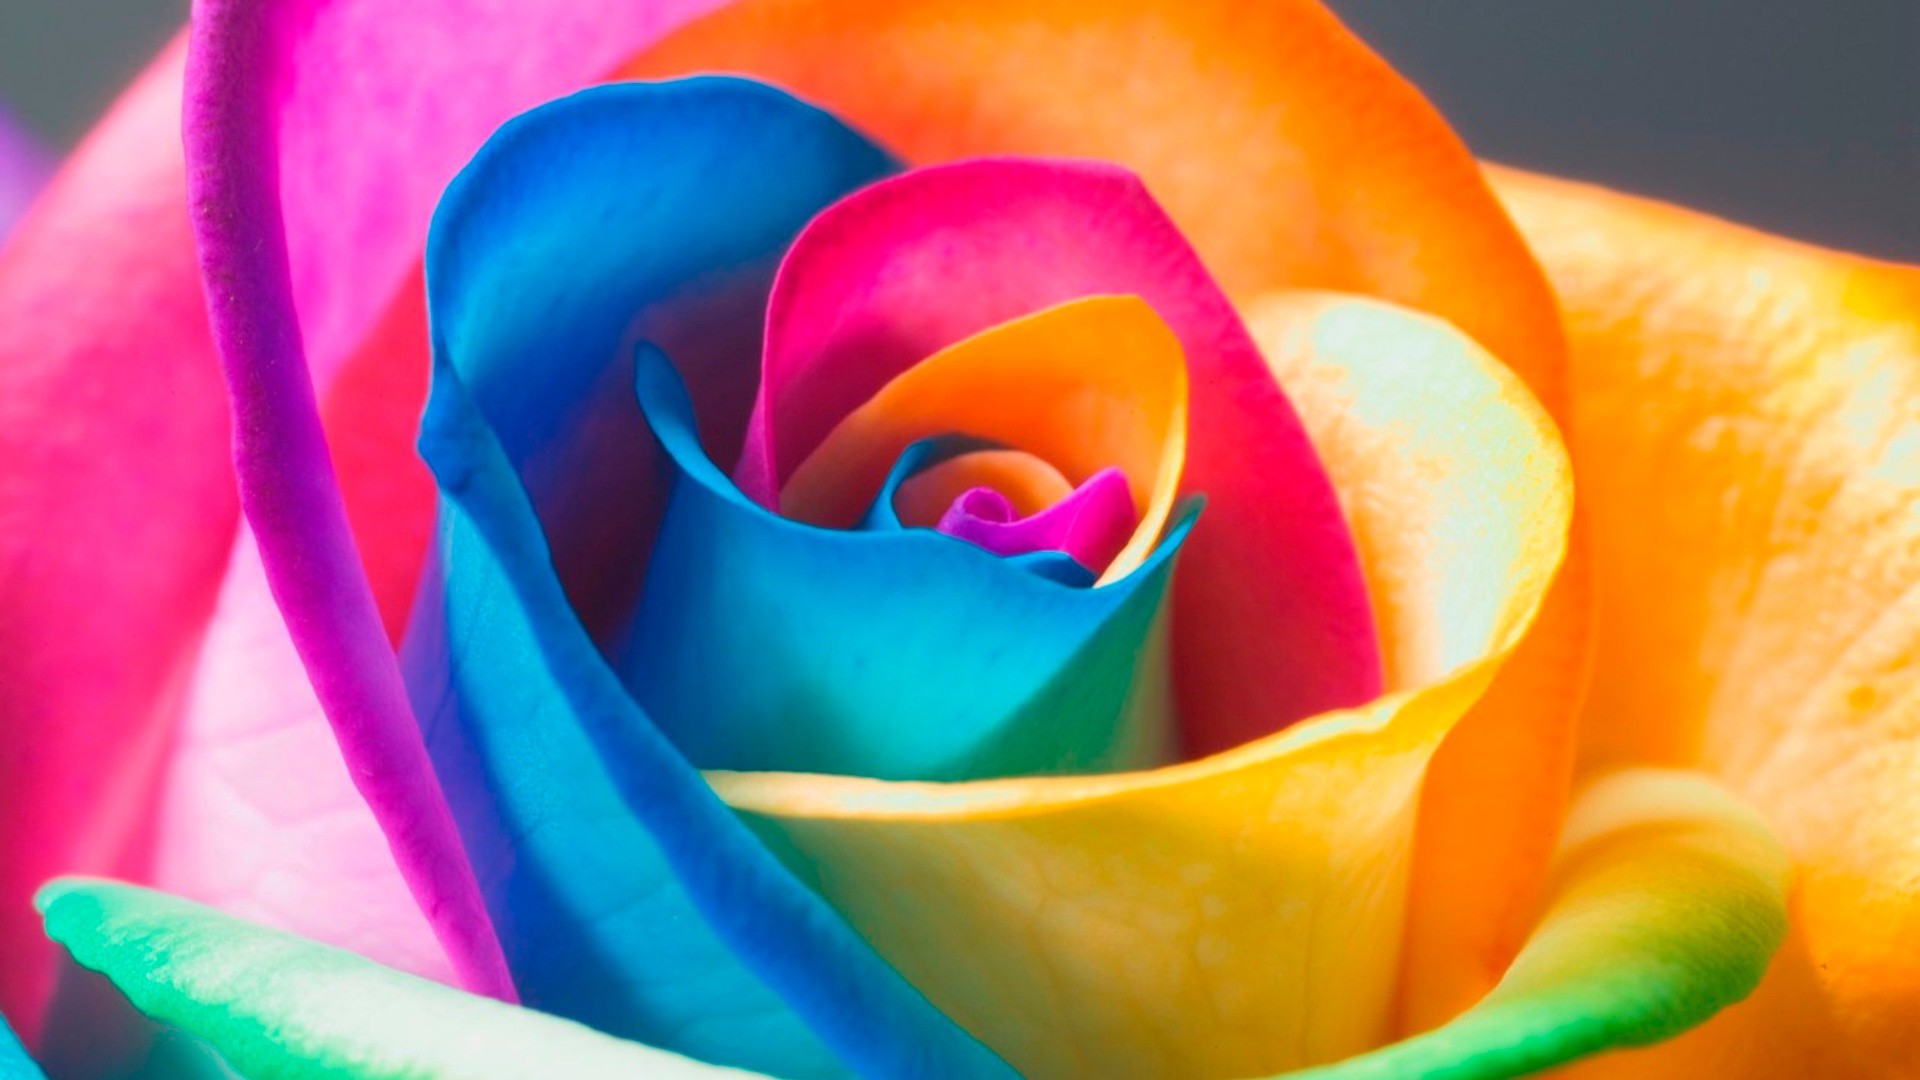 крупным планом цвет рабочего стола радуга пестрый цветок яркий